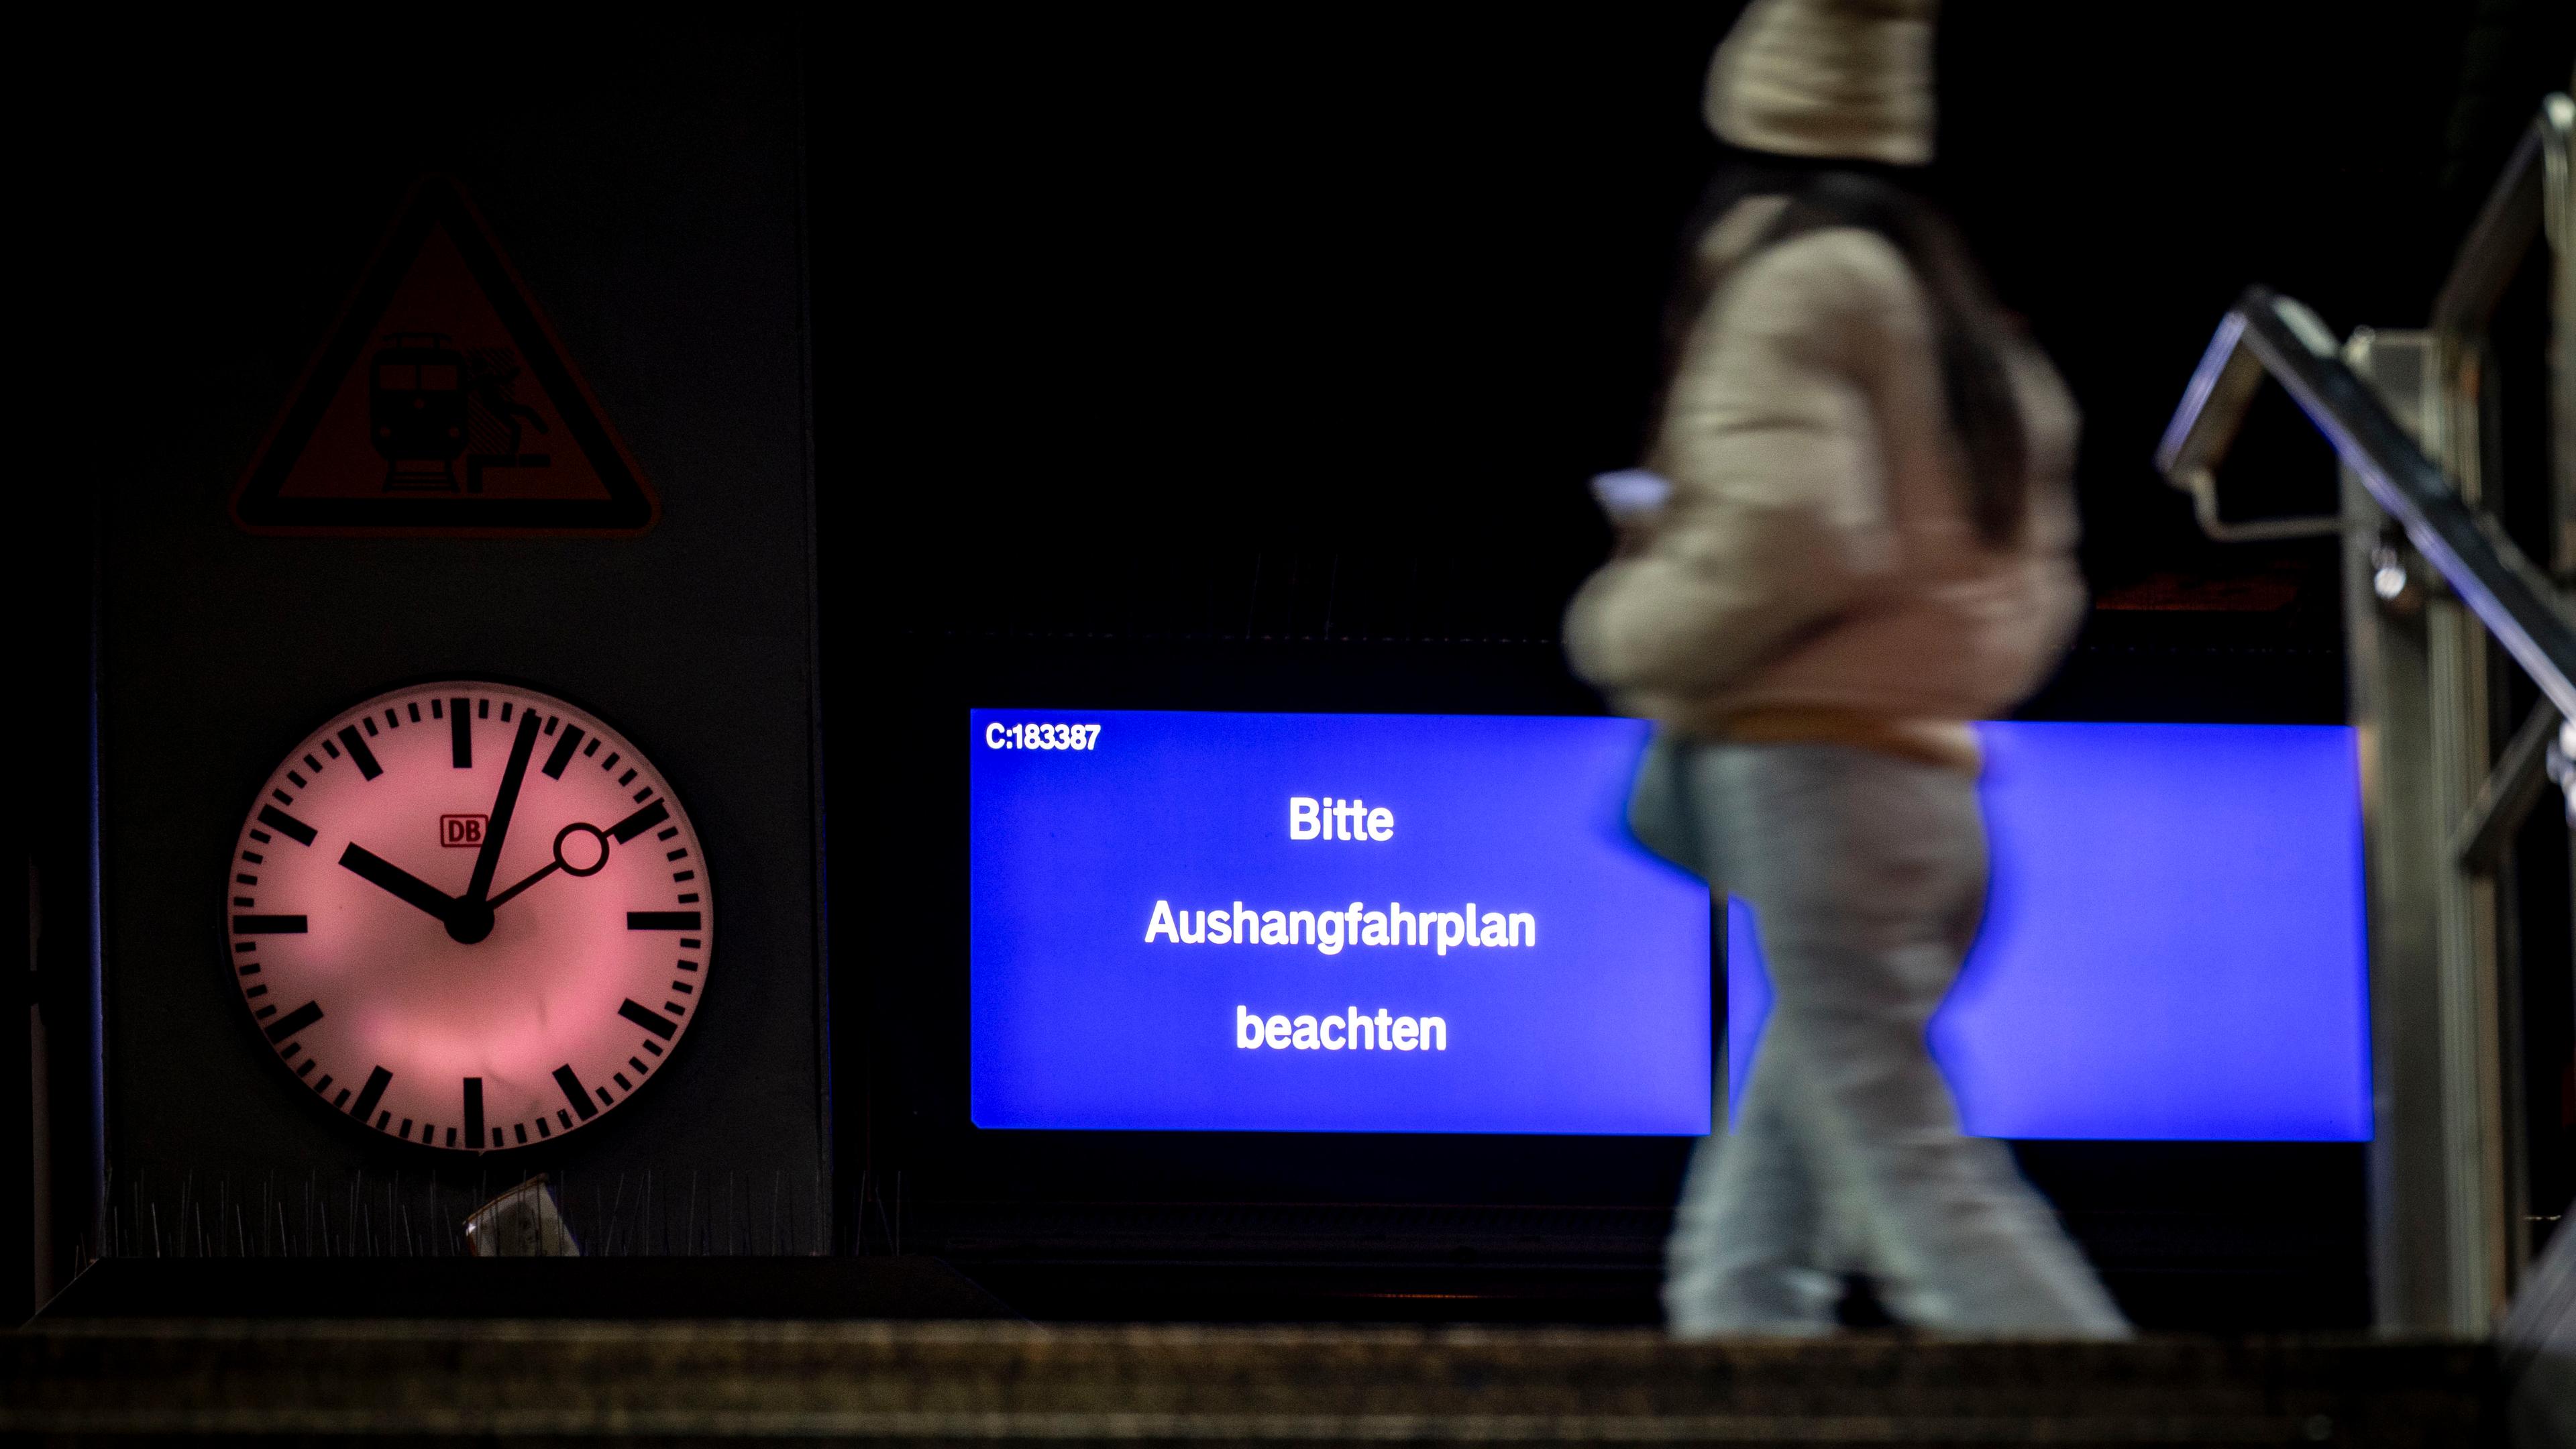 drhein-Westfalen, Düsseldorf: Eine Frau läuft über einen Bahnsteig, auf der Anzeigetafel ein Hinweis "Bitte Aushangfahrplan beachten". Die Gewerkschaft Deutscher Lokomotivführer (GDL) hat am Abend mit einem 24-stündigen Warnstreik begonnen